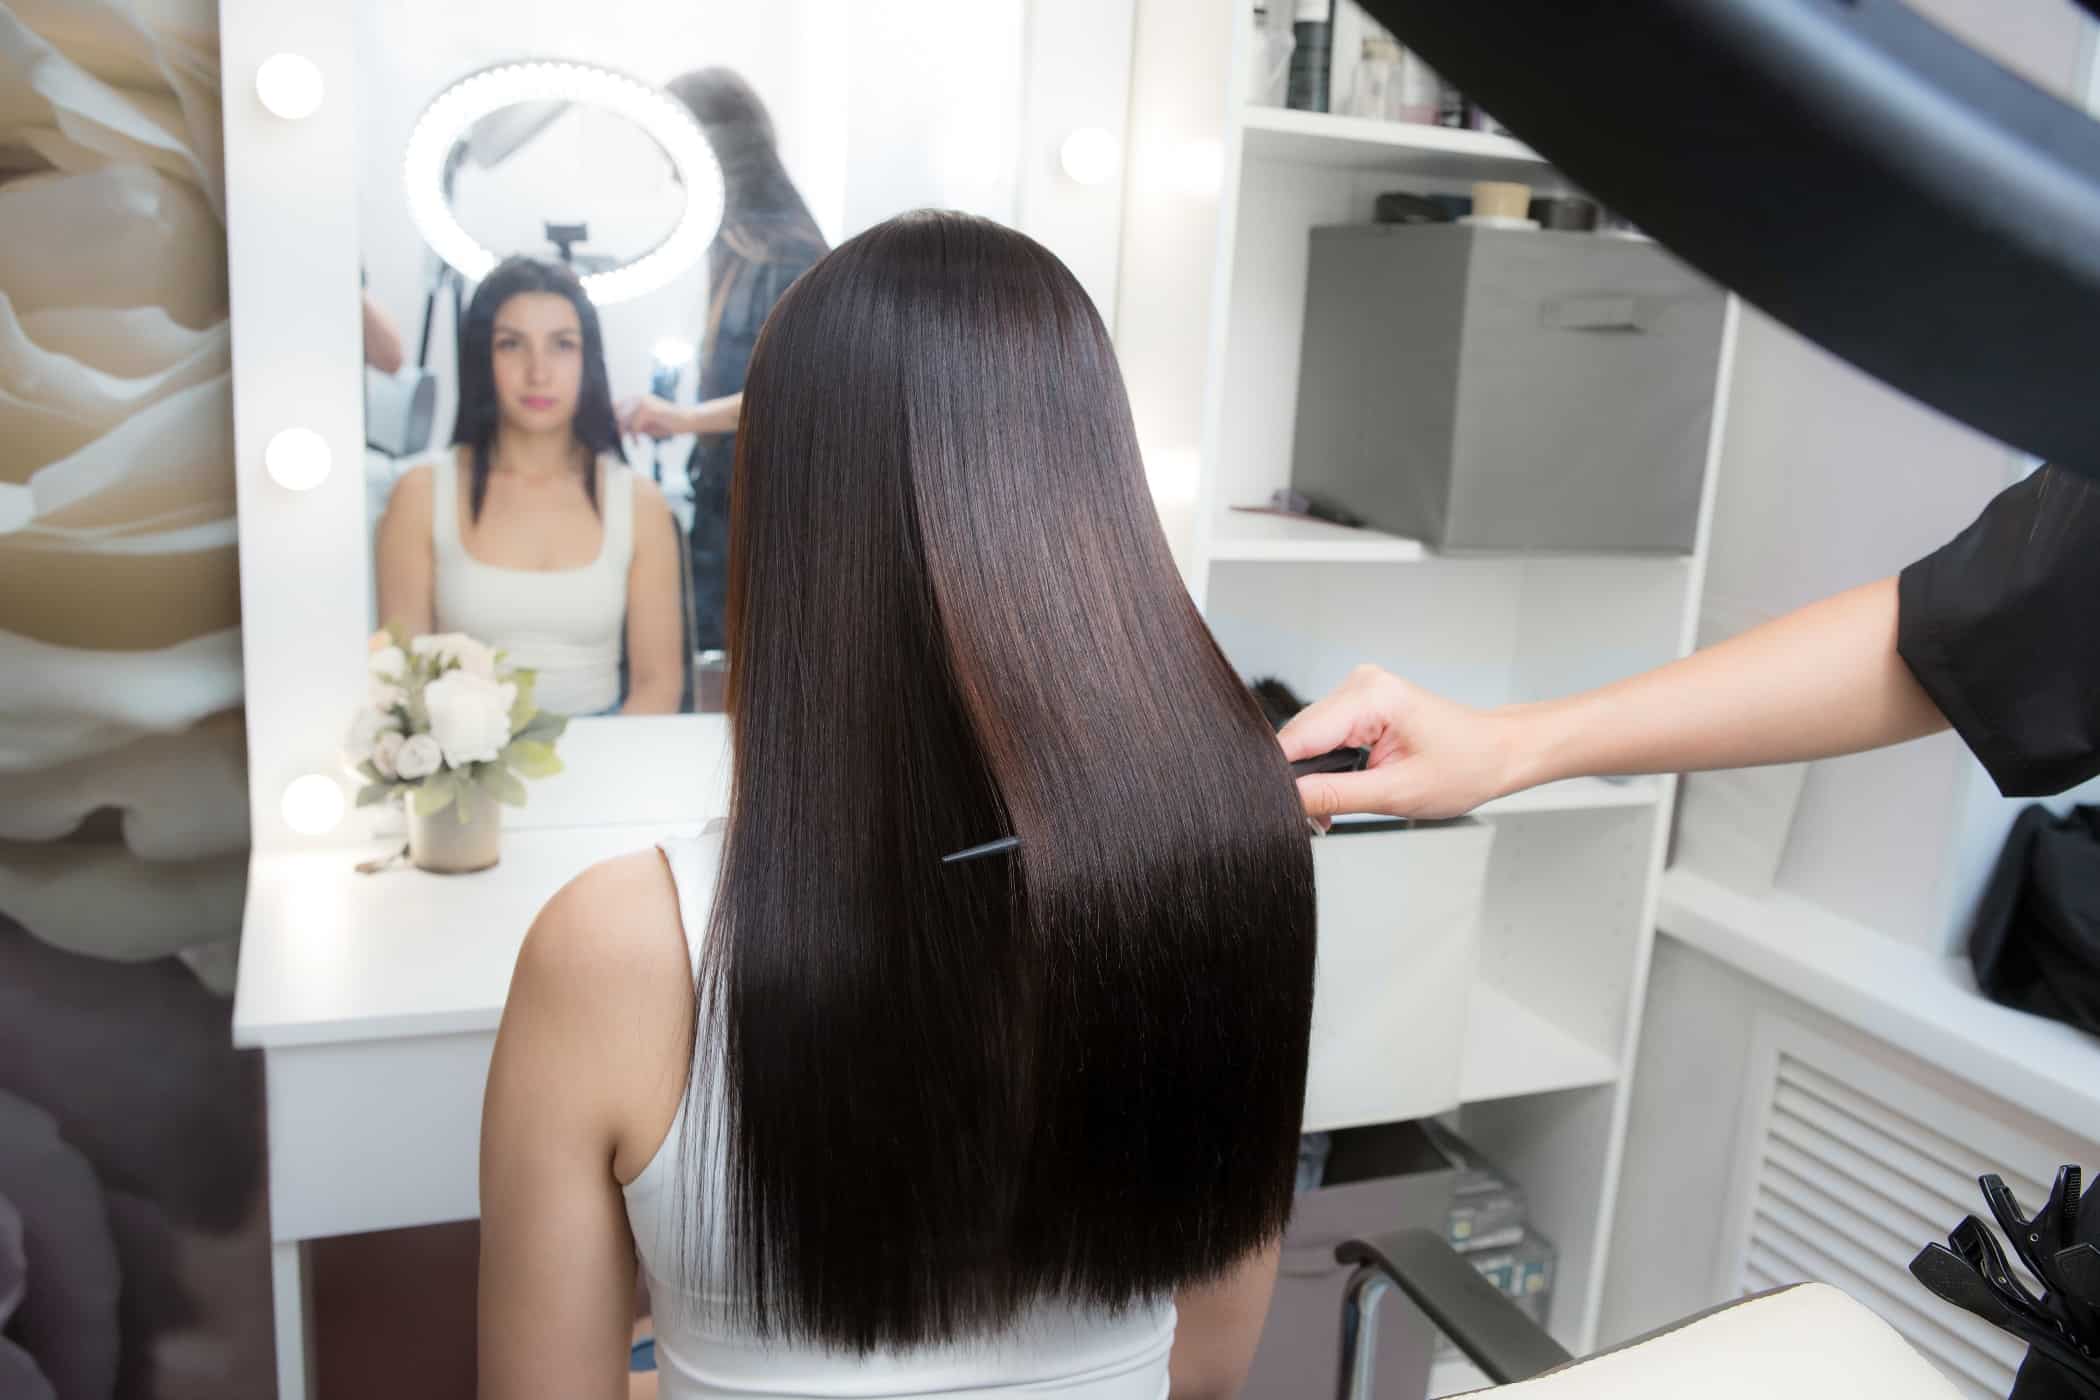 Laminacja włosów – co to jest i czy warto to robić?